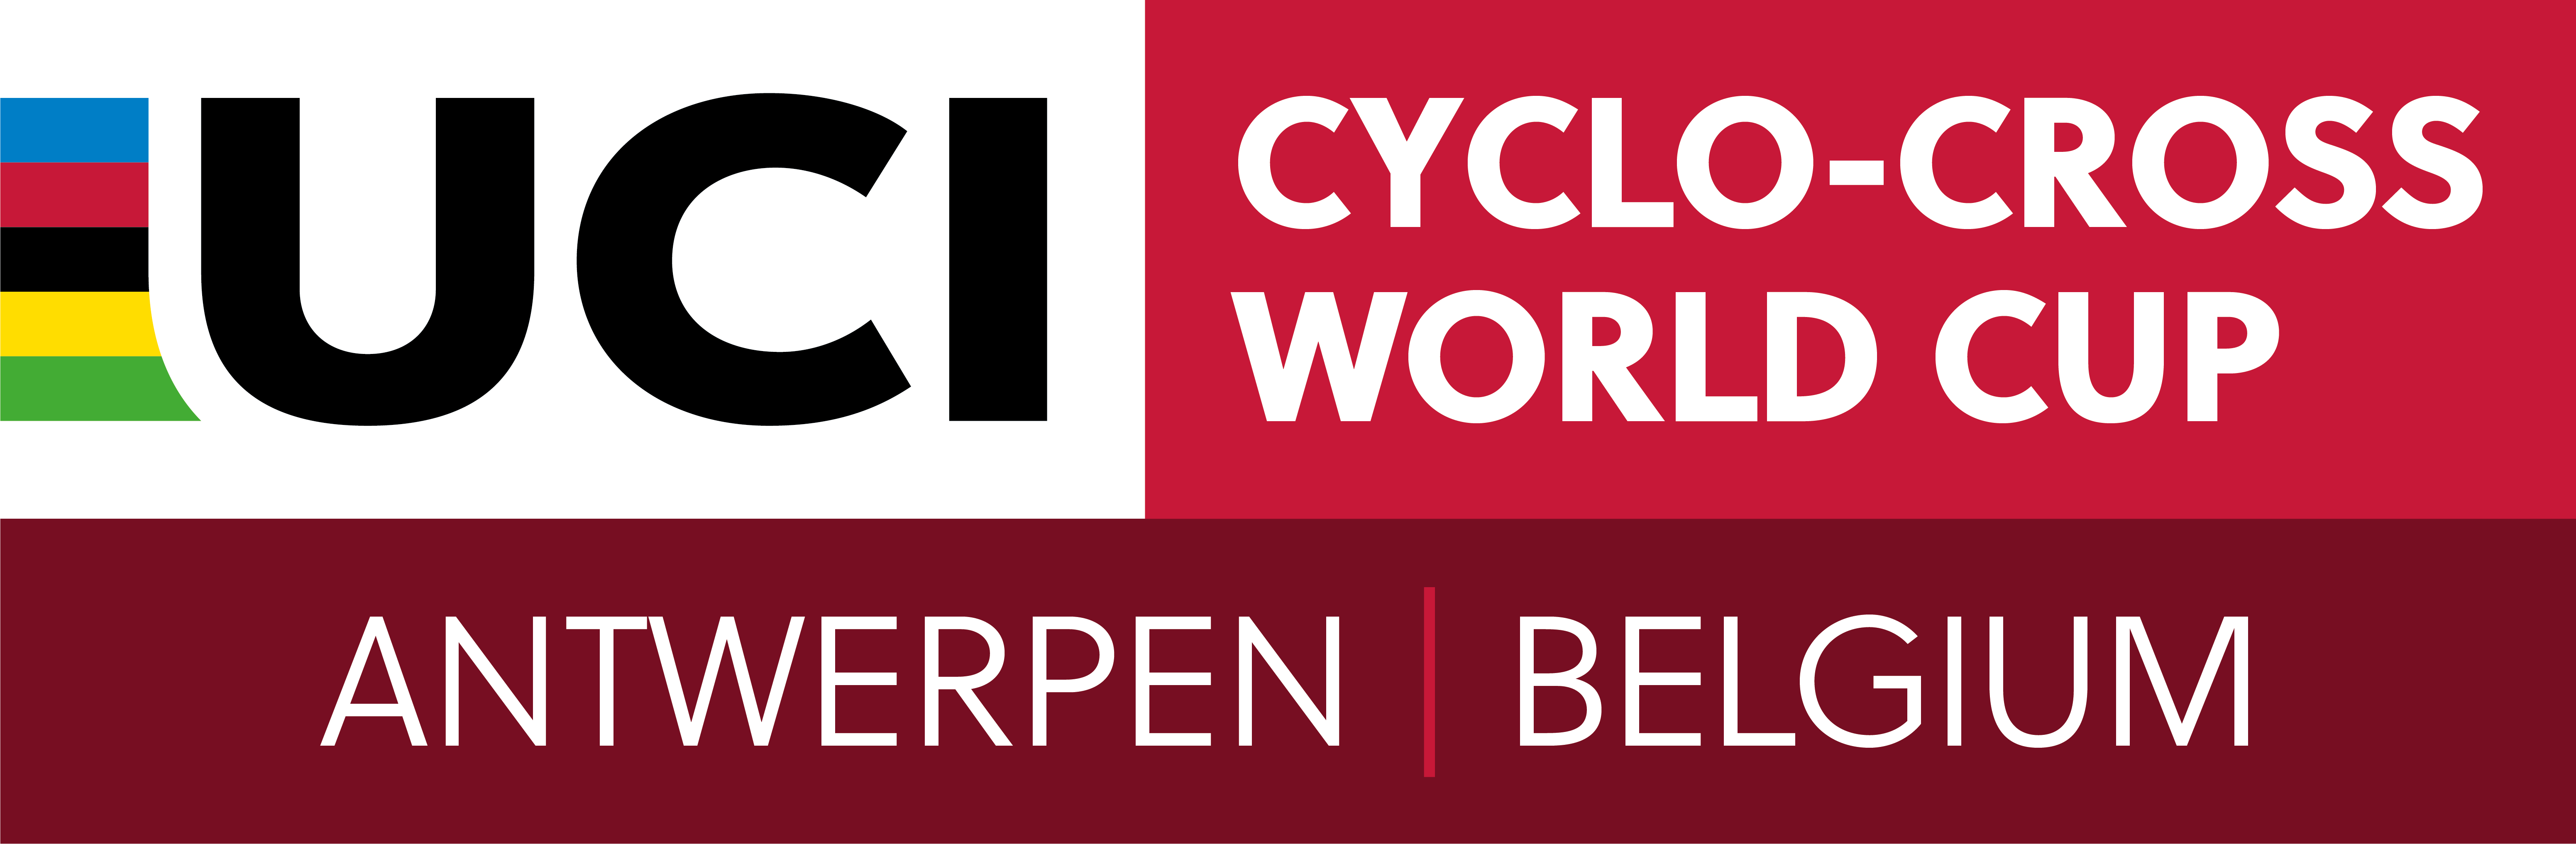 UCIシクロクロス ワールドカップ ロゴ